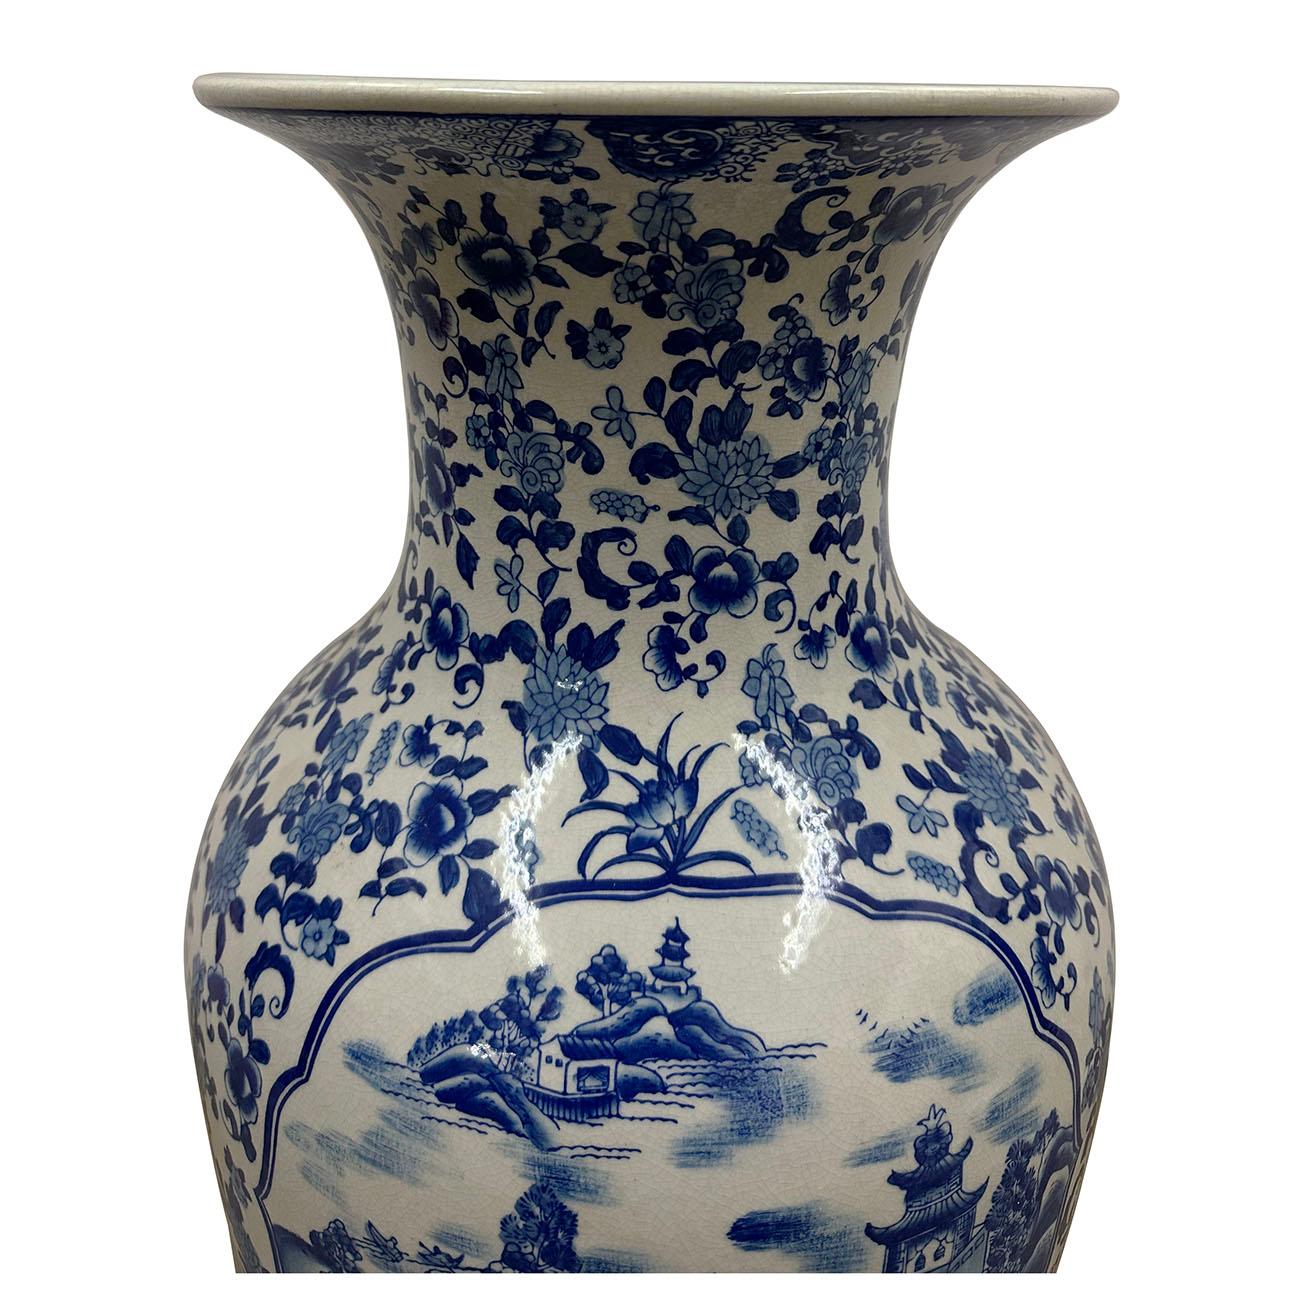 Ce vase en porcelaine bleu et blanc du XIXe siècle est un vase chinois classique. Le vase présente des fleurs et des paysages chinois traditionnels peints à la main dans des tons bleus sur un fond blanc. Les céramiques chinoises ont une longue et